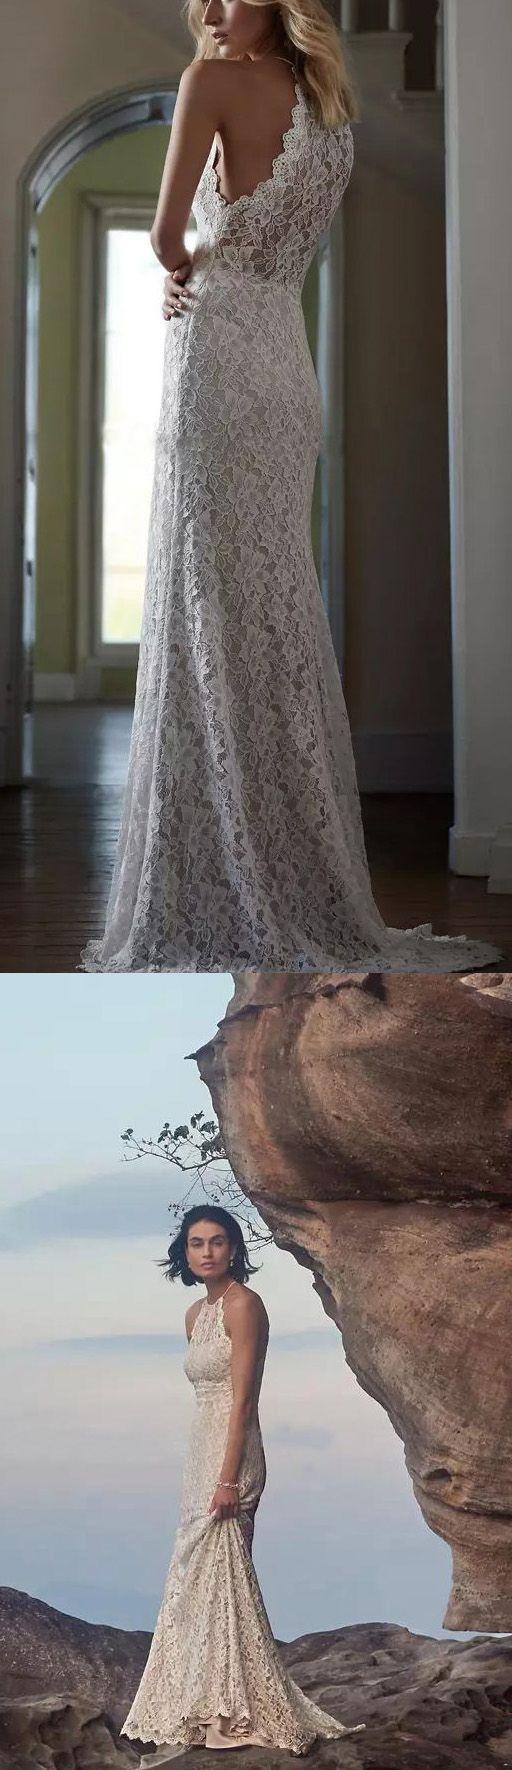 Свадьба - White Wedding Dresses, Long Wedding Dresses, Long White Wedding Dresses With Lace Sweep Train Halter Sale Online WF02G48-823